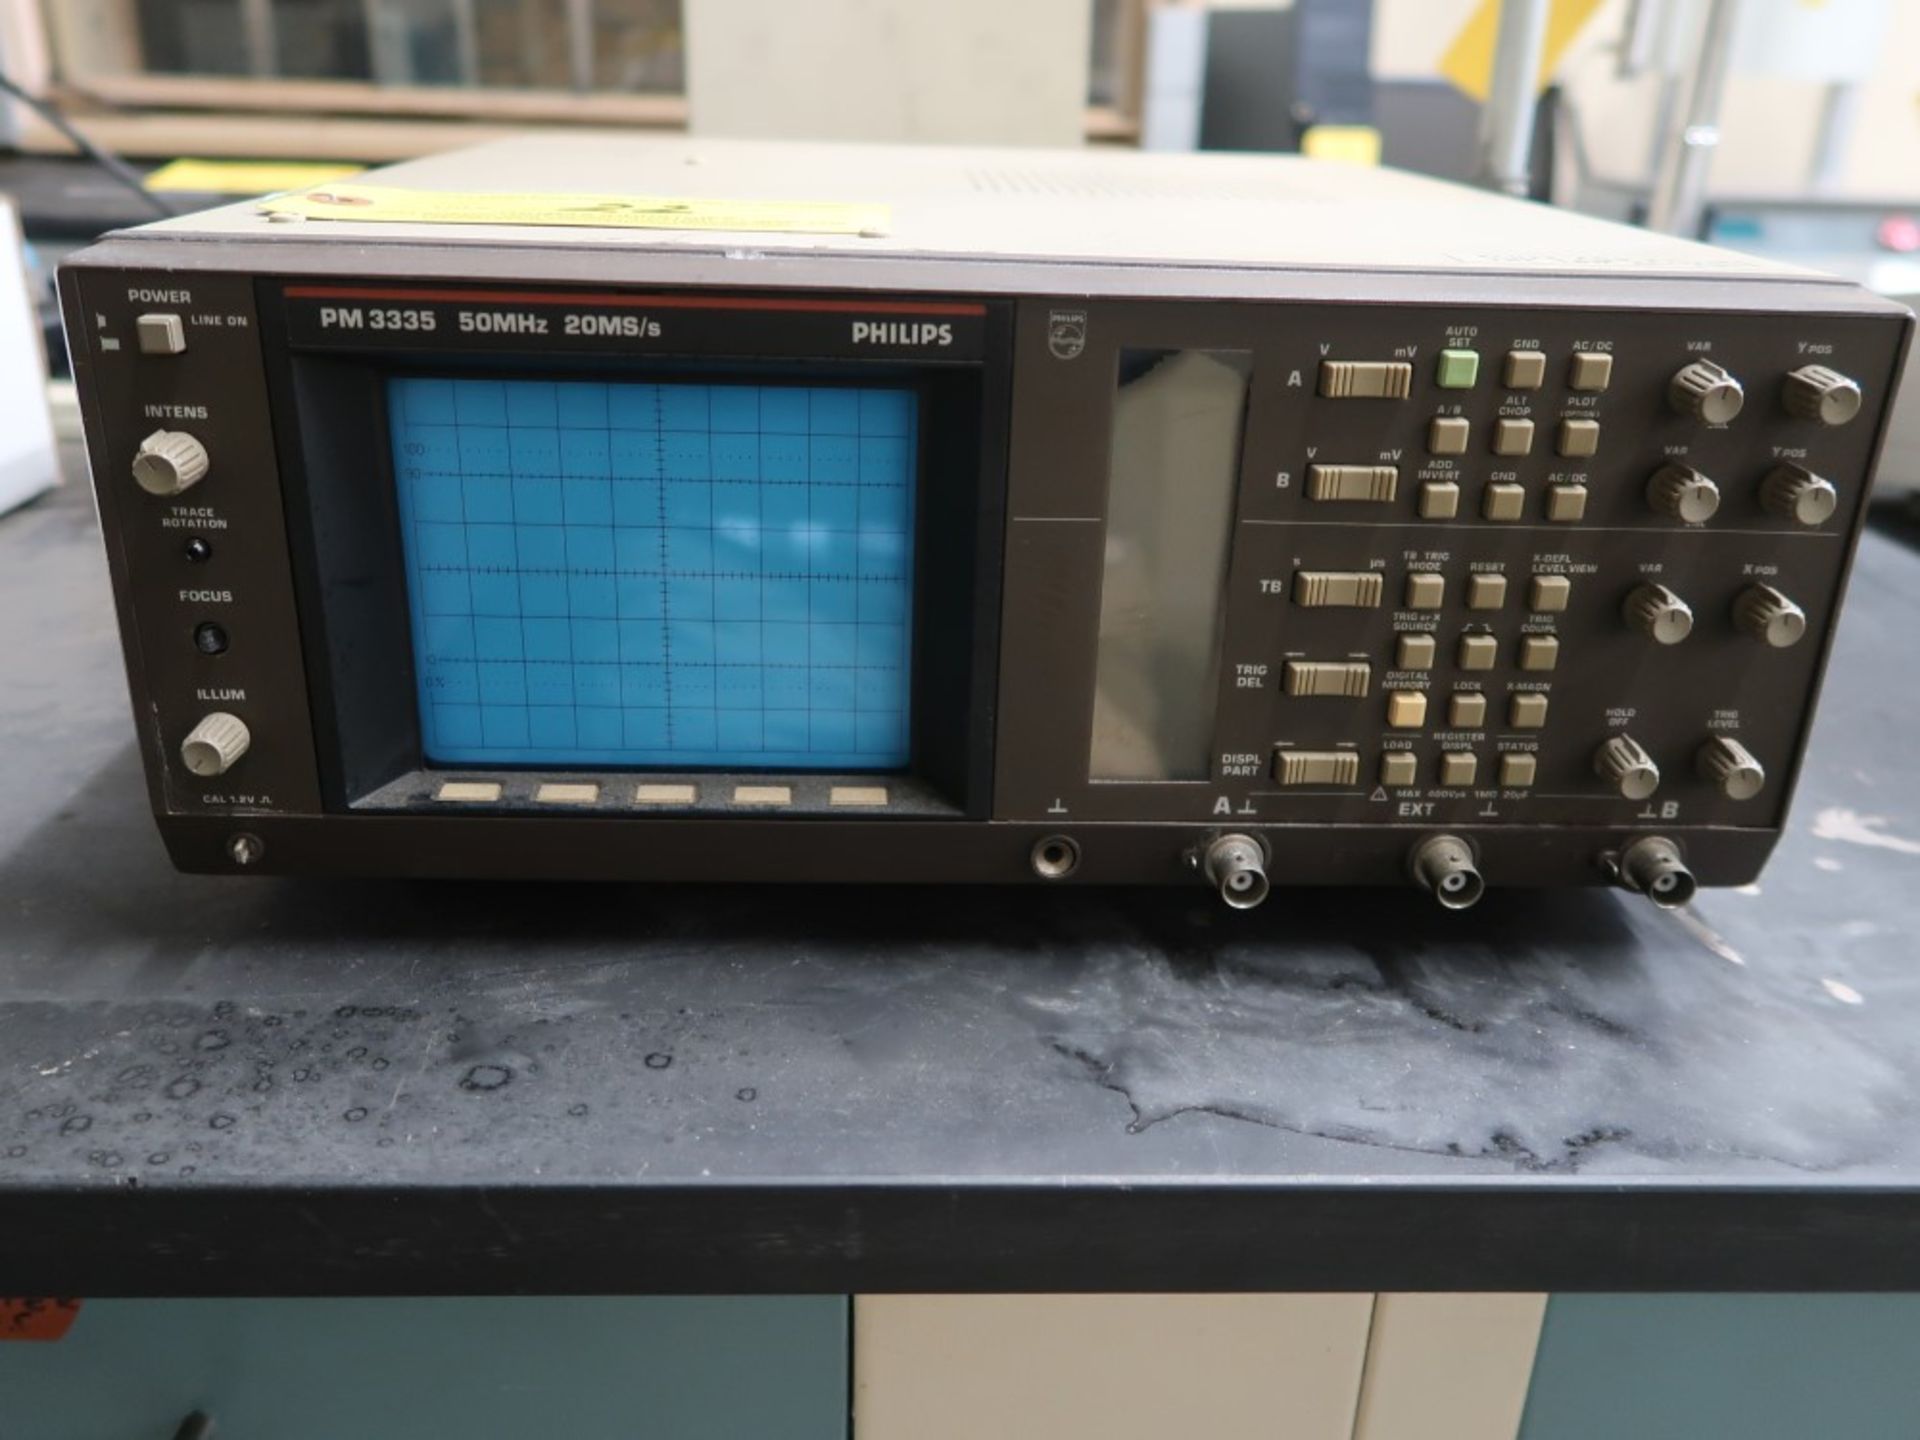 Philips/Fluke Model PM 3335 Analog Oscilloscope S/N 9444 033 35400 50 MHz 20 MS/s - Image 2 of 2